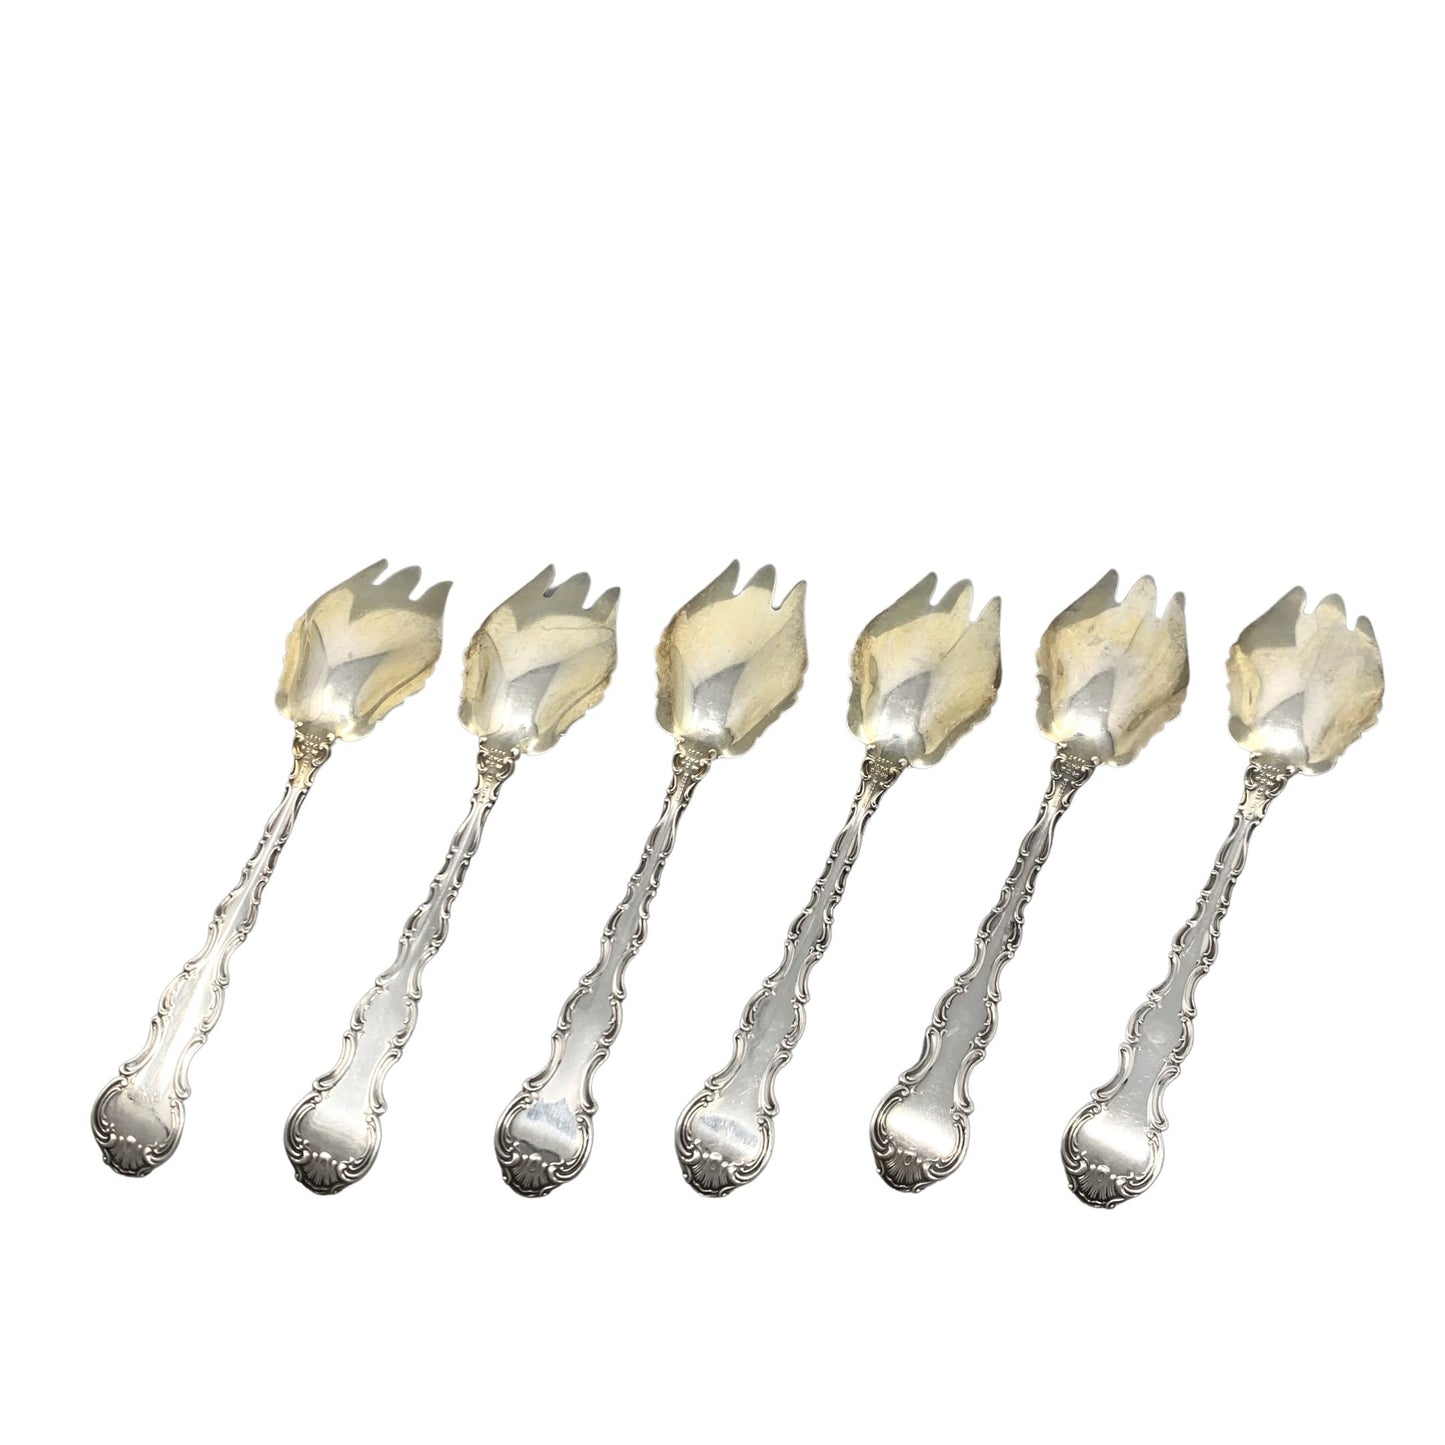 Gorham Strasbourg Sterling Silver Gold Washed Ice Cream Forks (6)